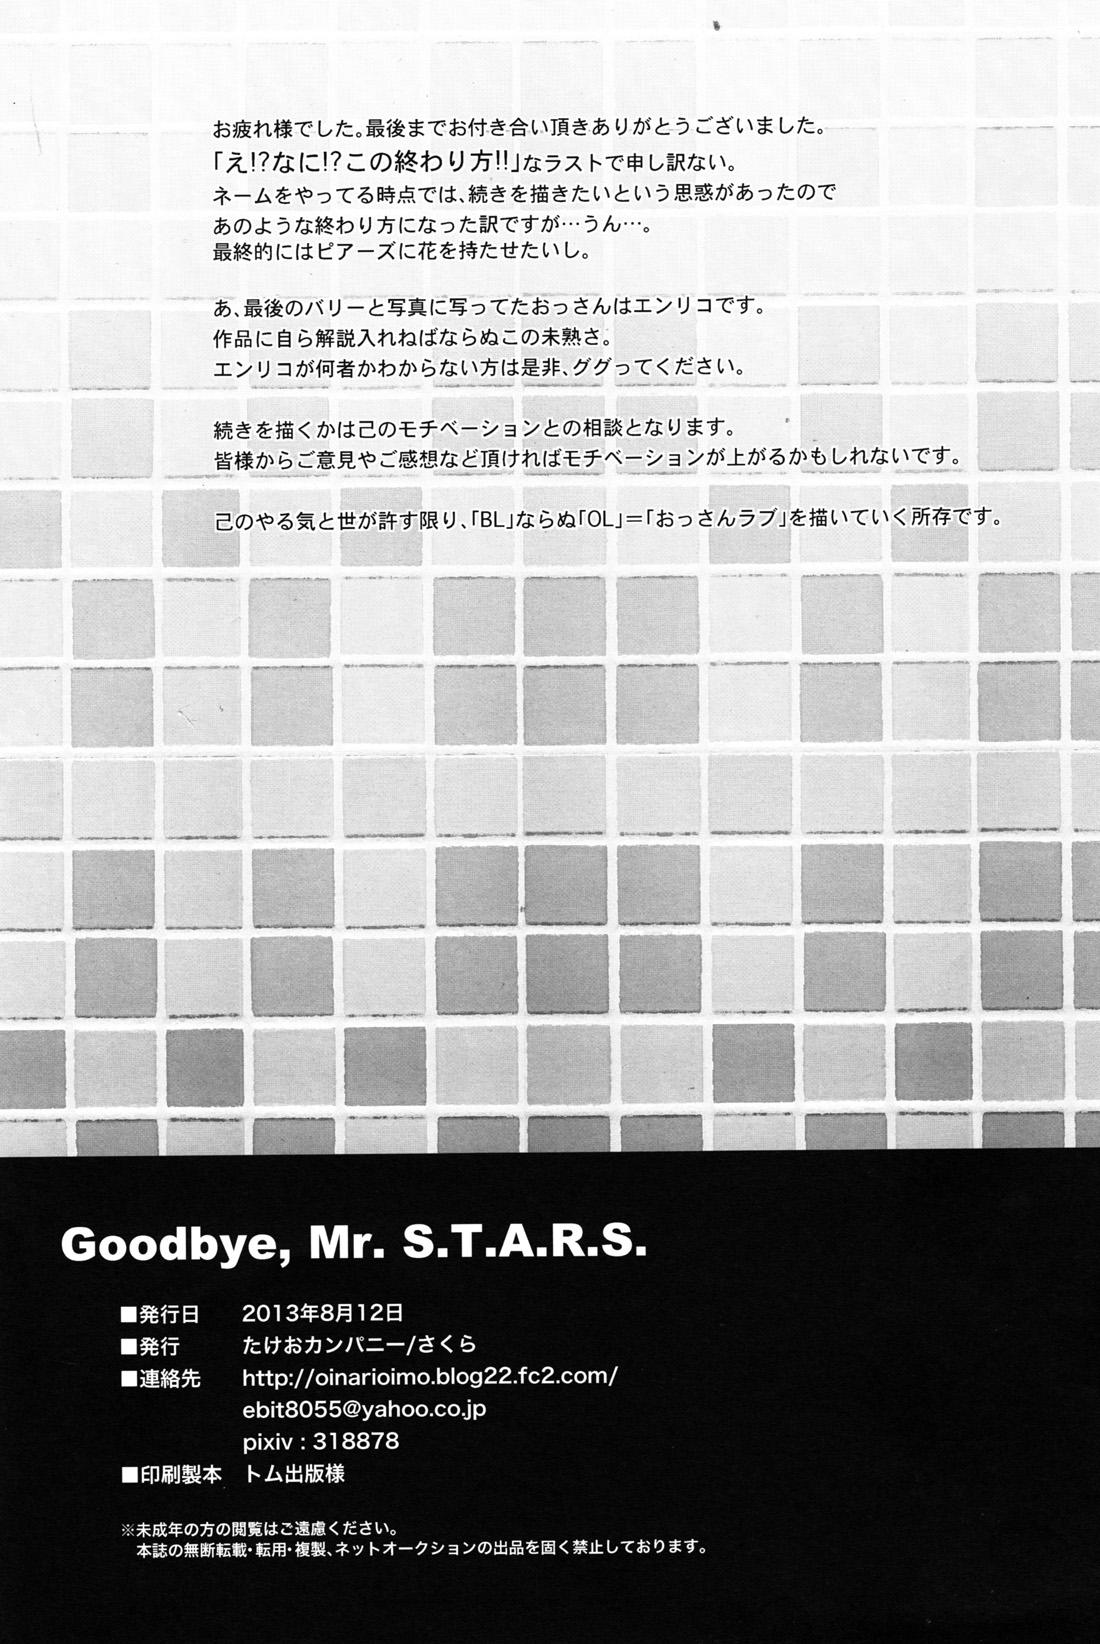 Oinarioimo: Goodbye MR S.T.A.R.S 40